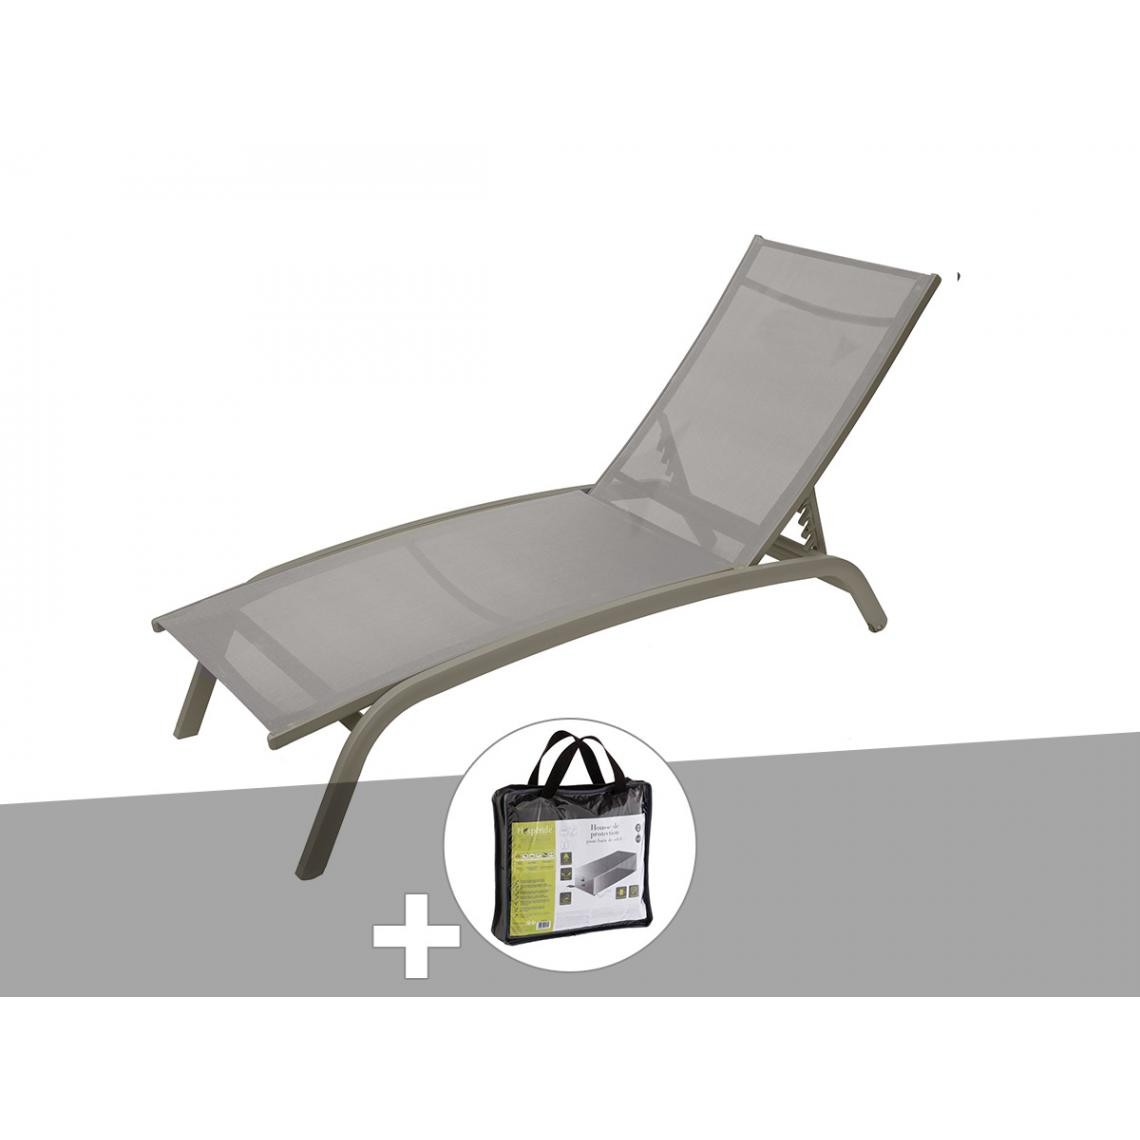 Hesperide - Transat en texaline Bonao Noisette/Graphite avec housse de protection - Hespéride - Transats, chaises longues